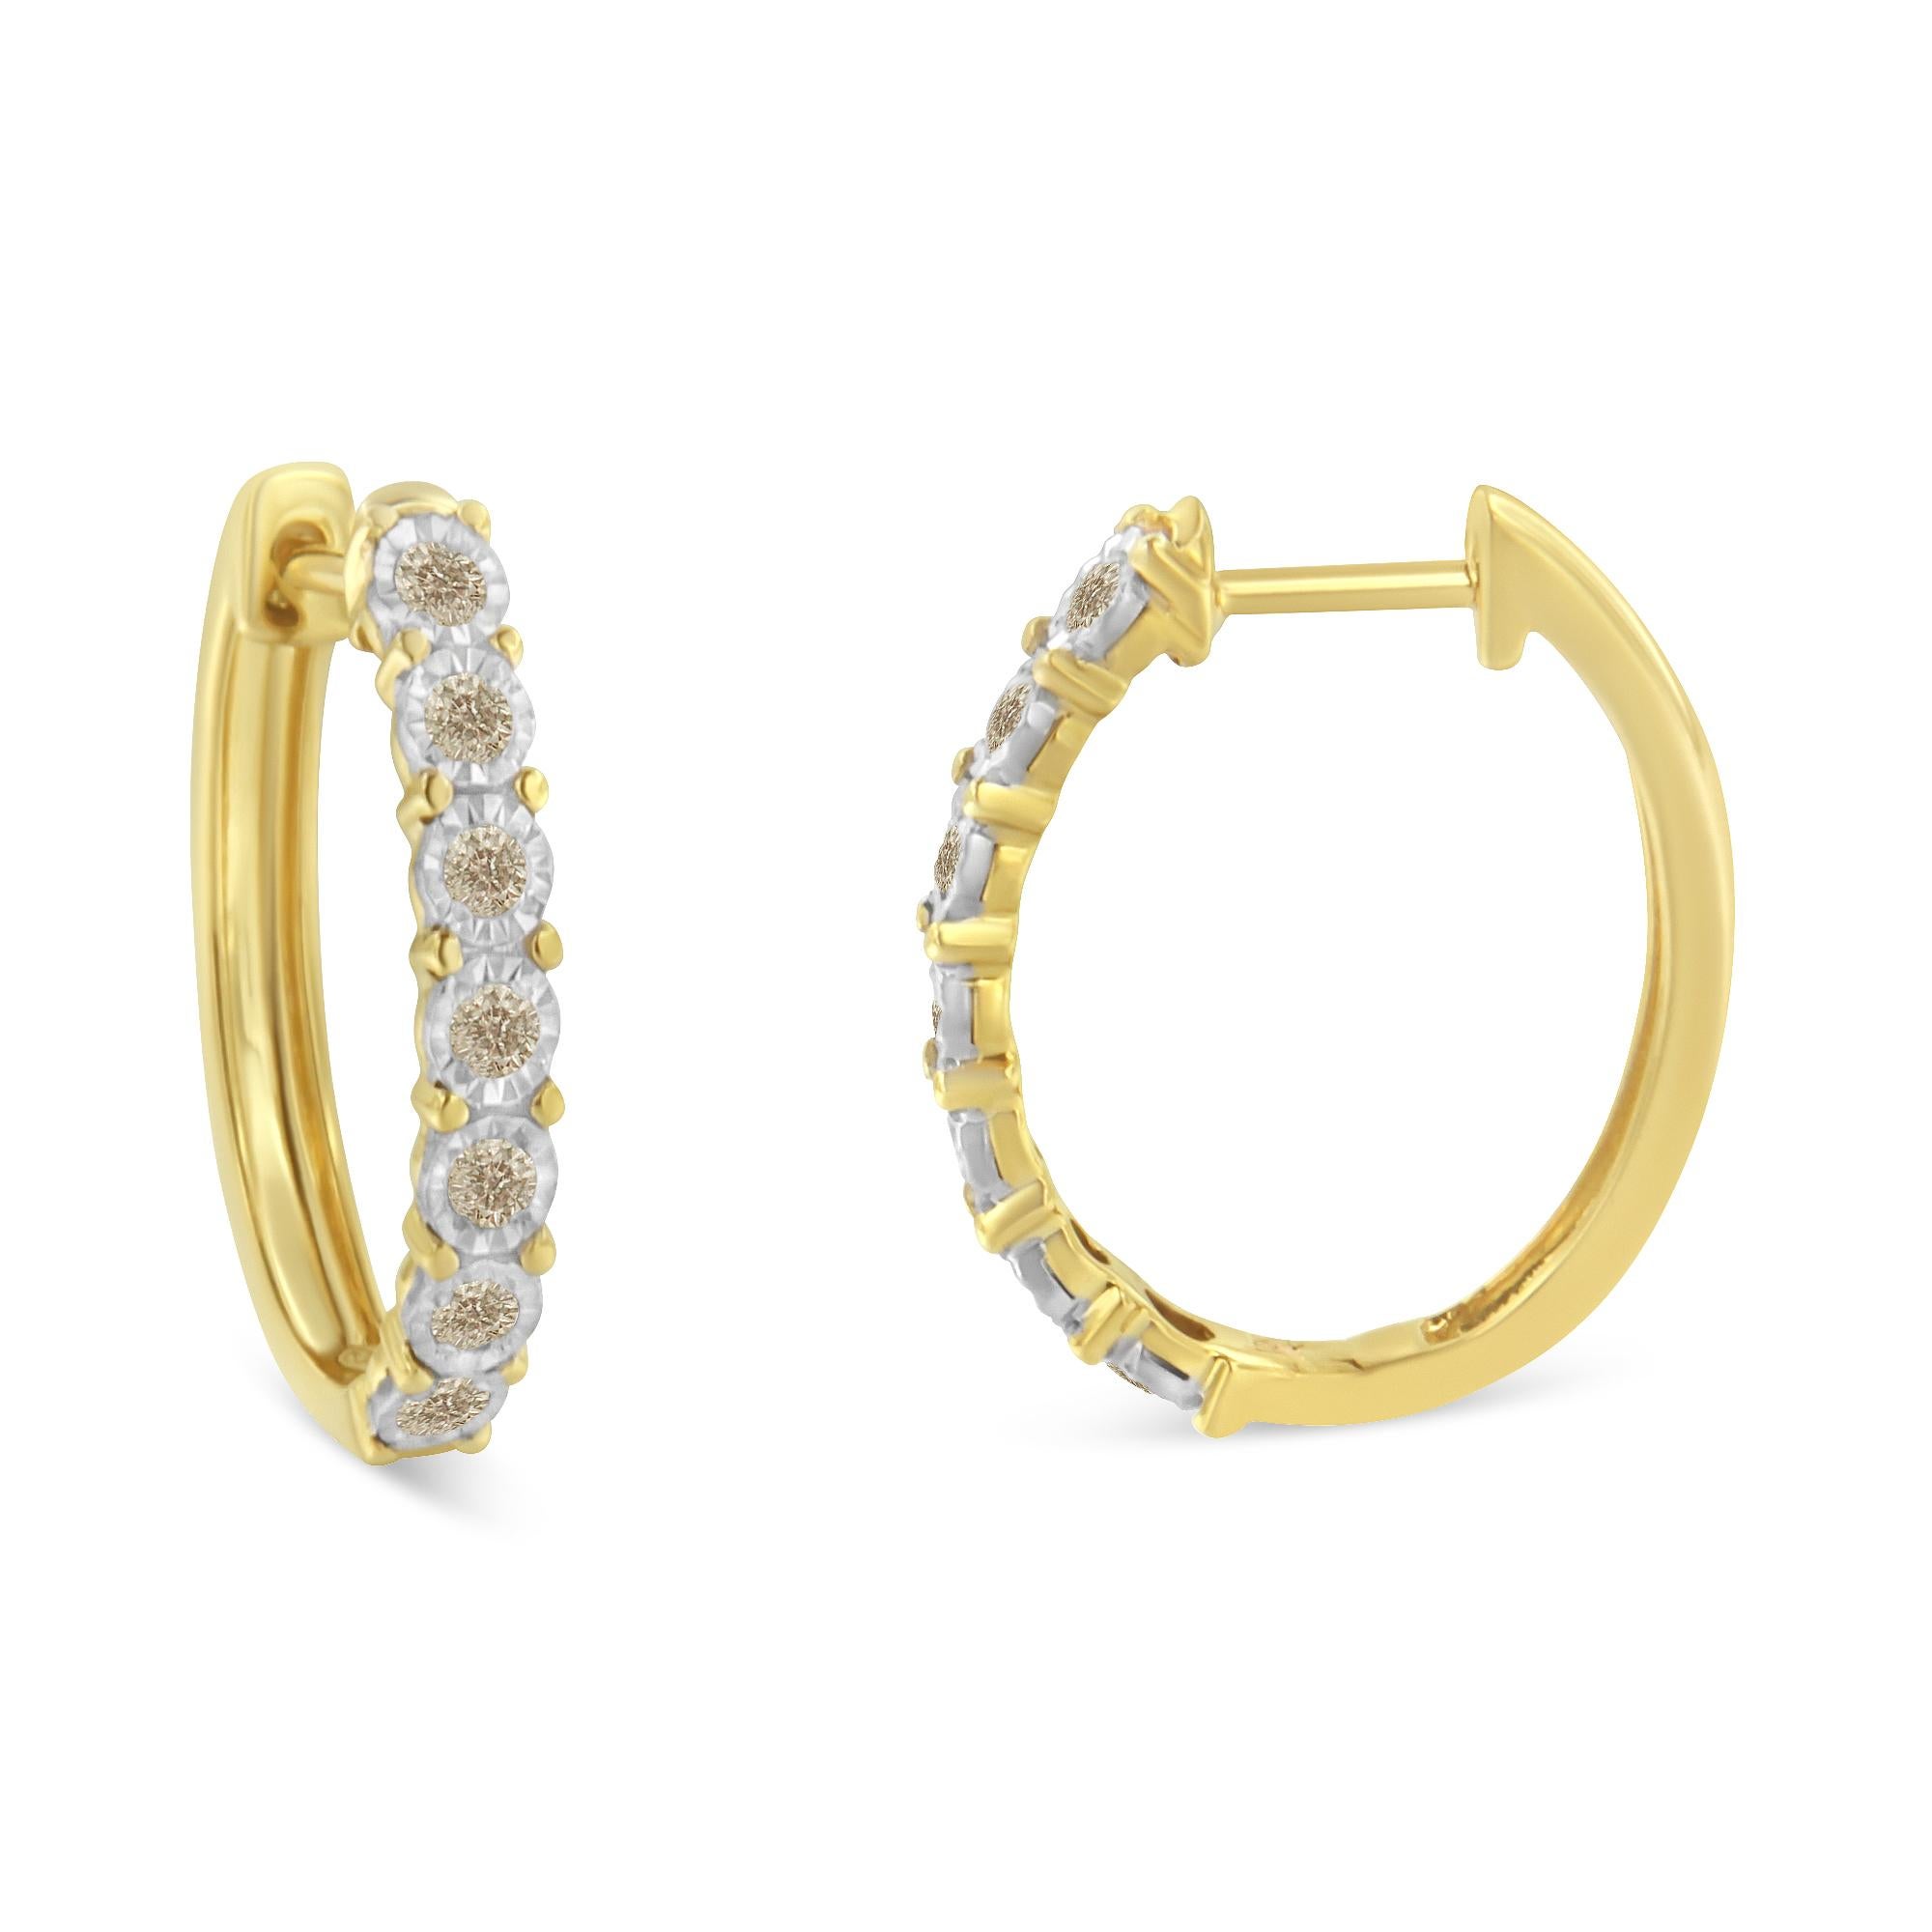 Dieses Paar Ohrringe ist mit schimmernden Diamanten besetzt, die in 10-karätiges, zweifarbiges Gold gefasst sind. Jeder Ohrring hat sieben runde Diamanten, die in einer Wunderfassung gefasst sind, um ihre Brillanz zu verstärken. Das Gesamtgewicht